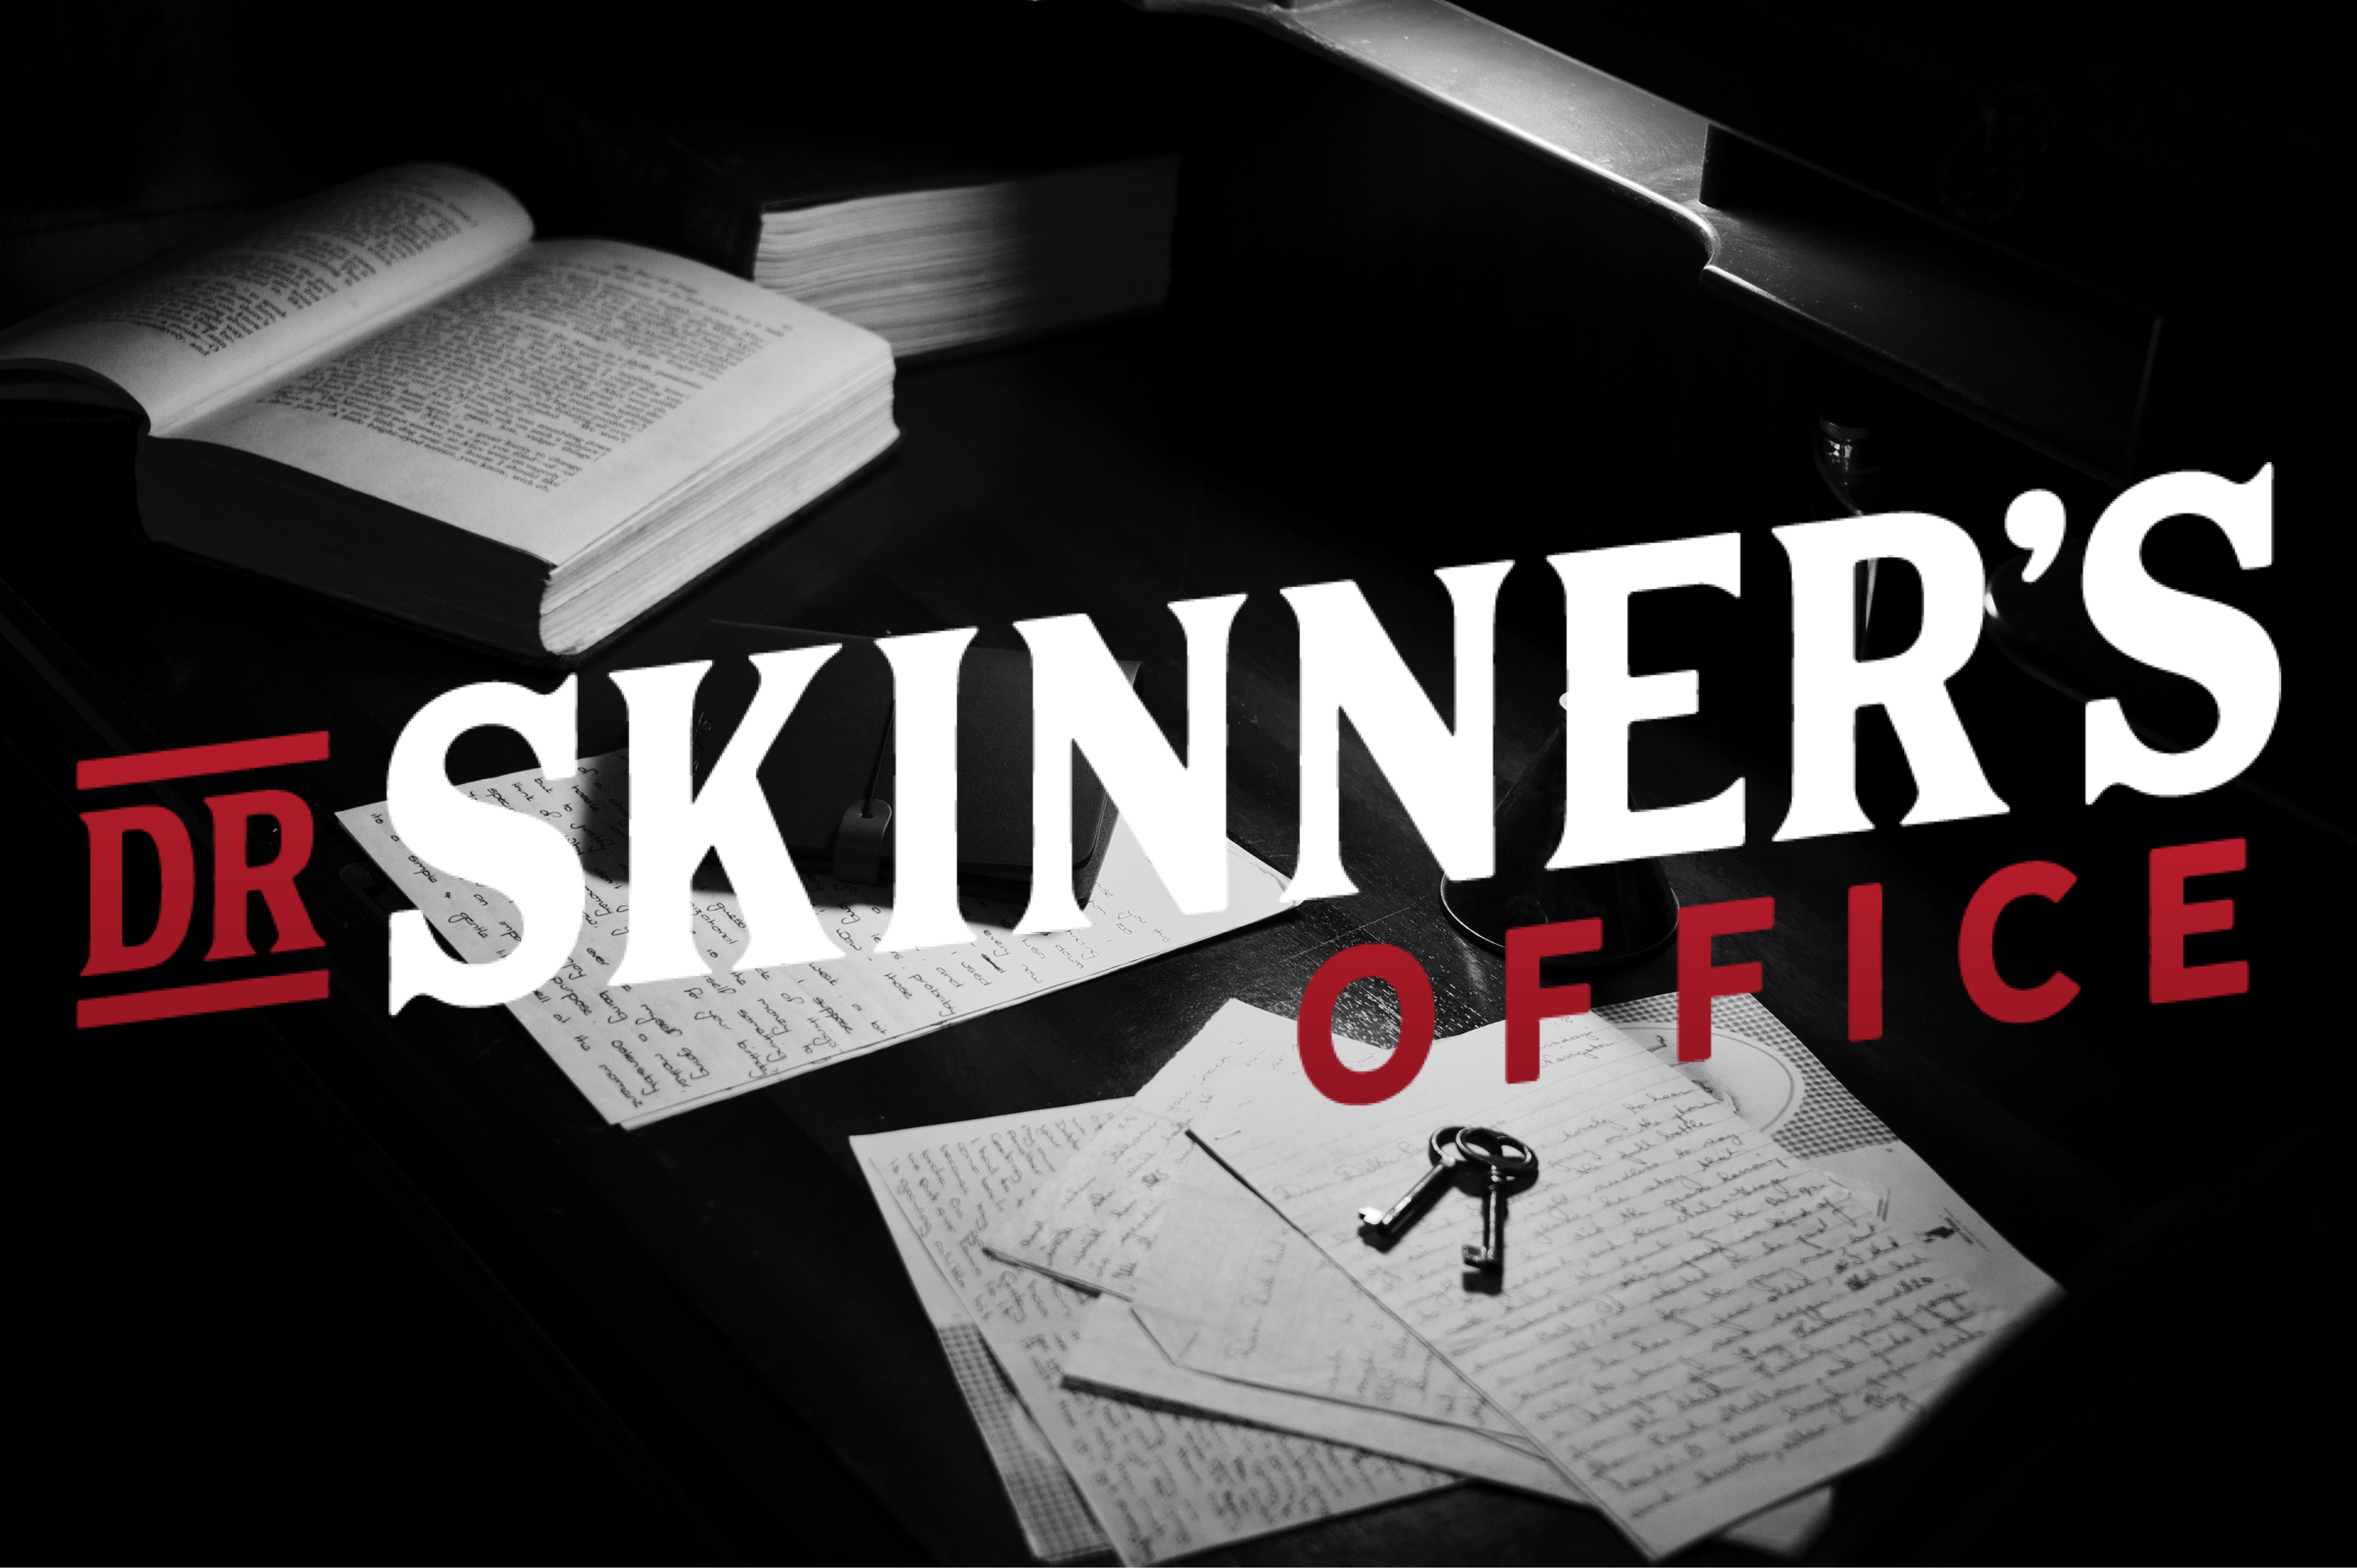 Dr Skinner's Office Escape Room Link